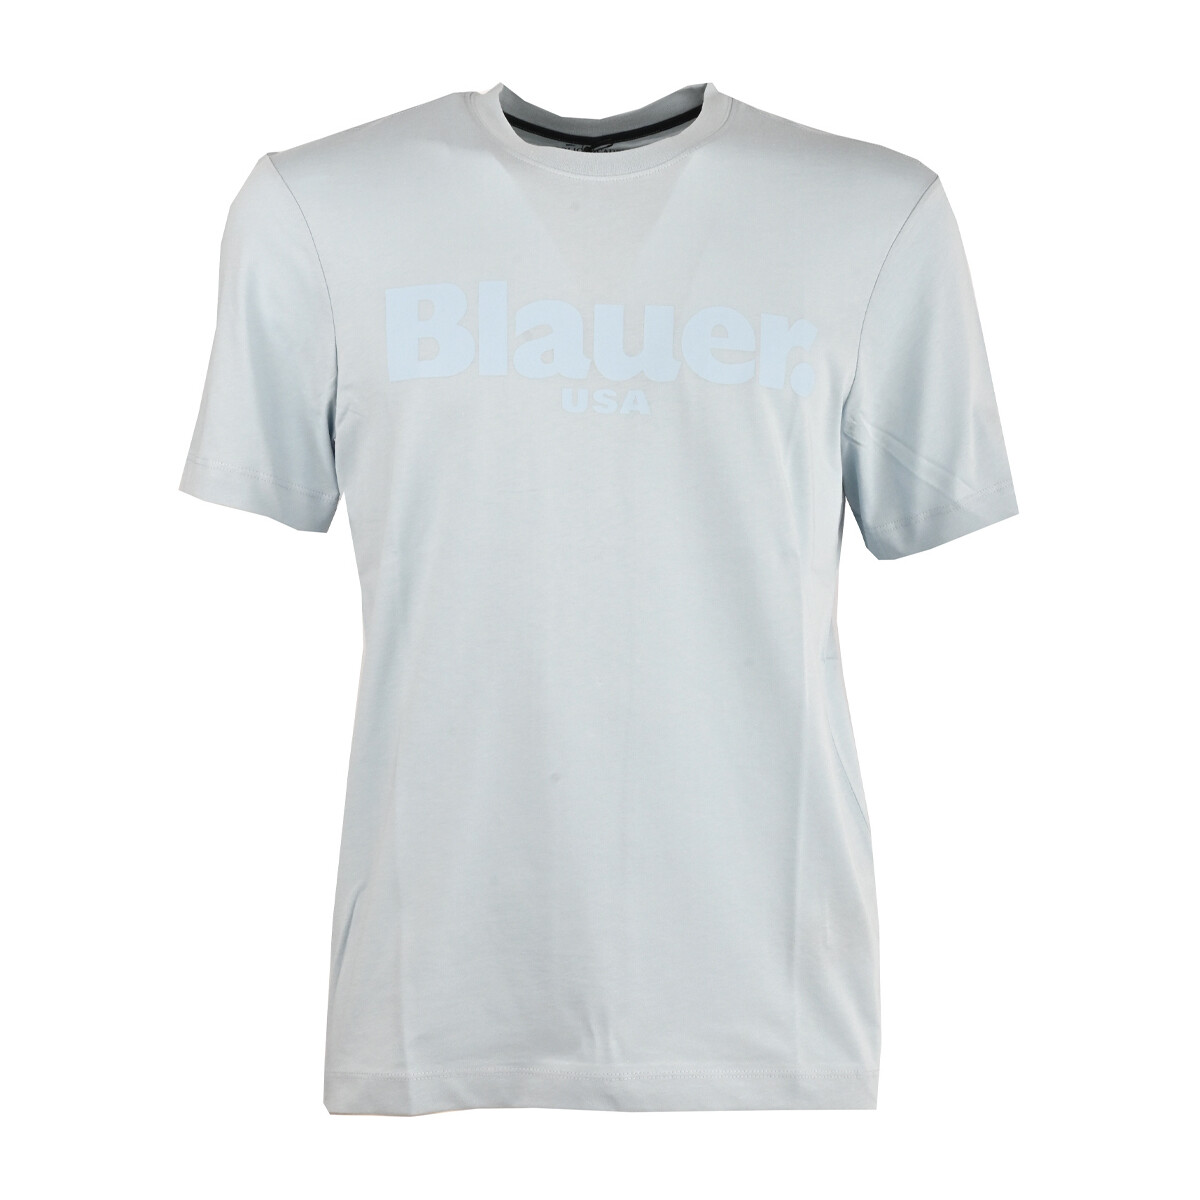 Vêtements Homme Navy Blue Cupro Short Sleeve Woven Mix Boxy T-Shirt 23sbluh02094_004547-838 Bleu